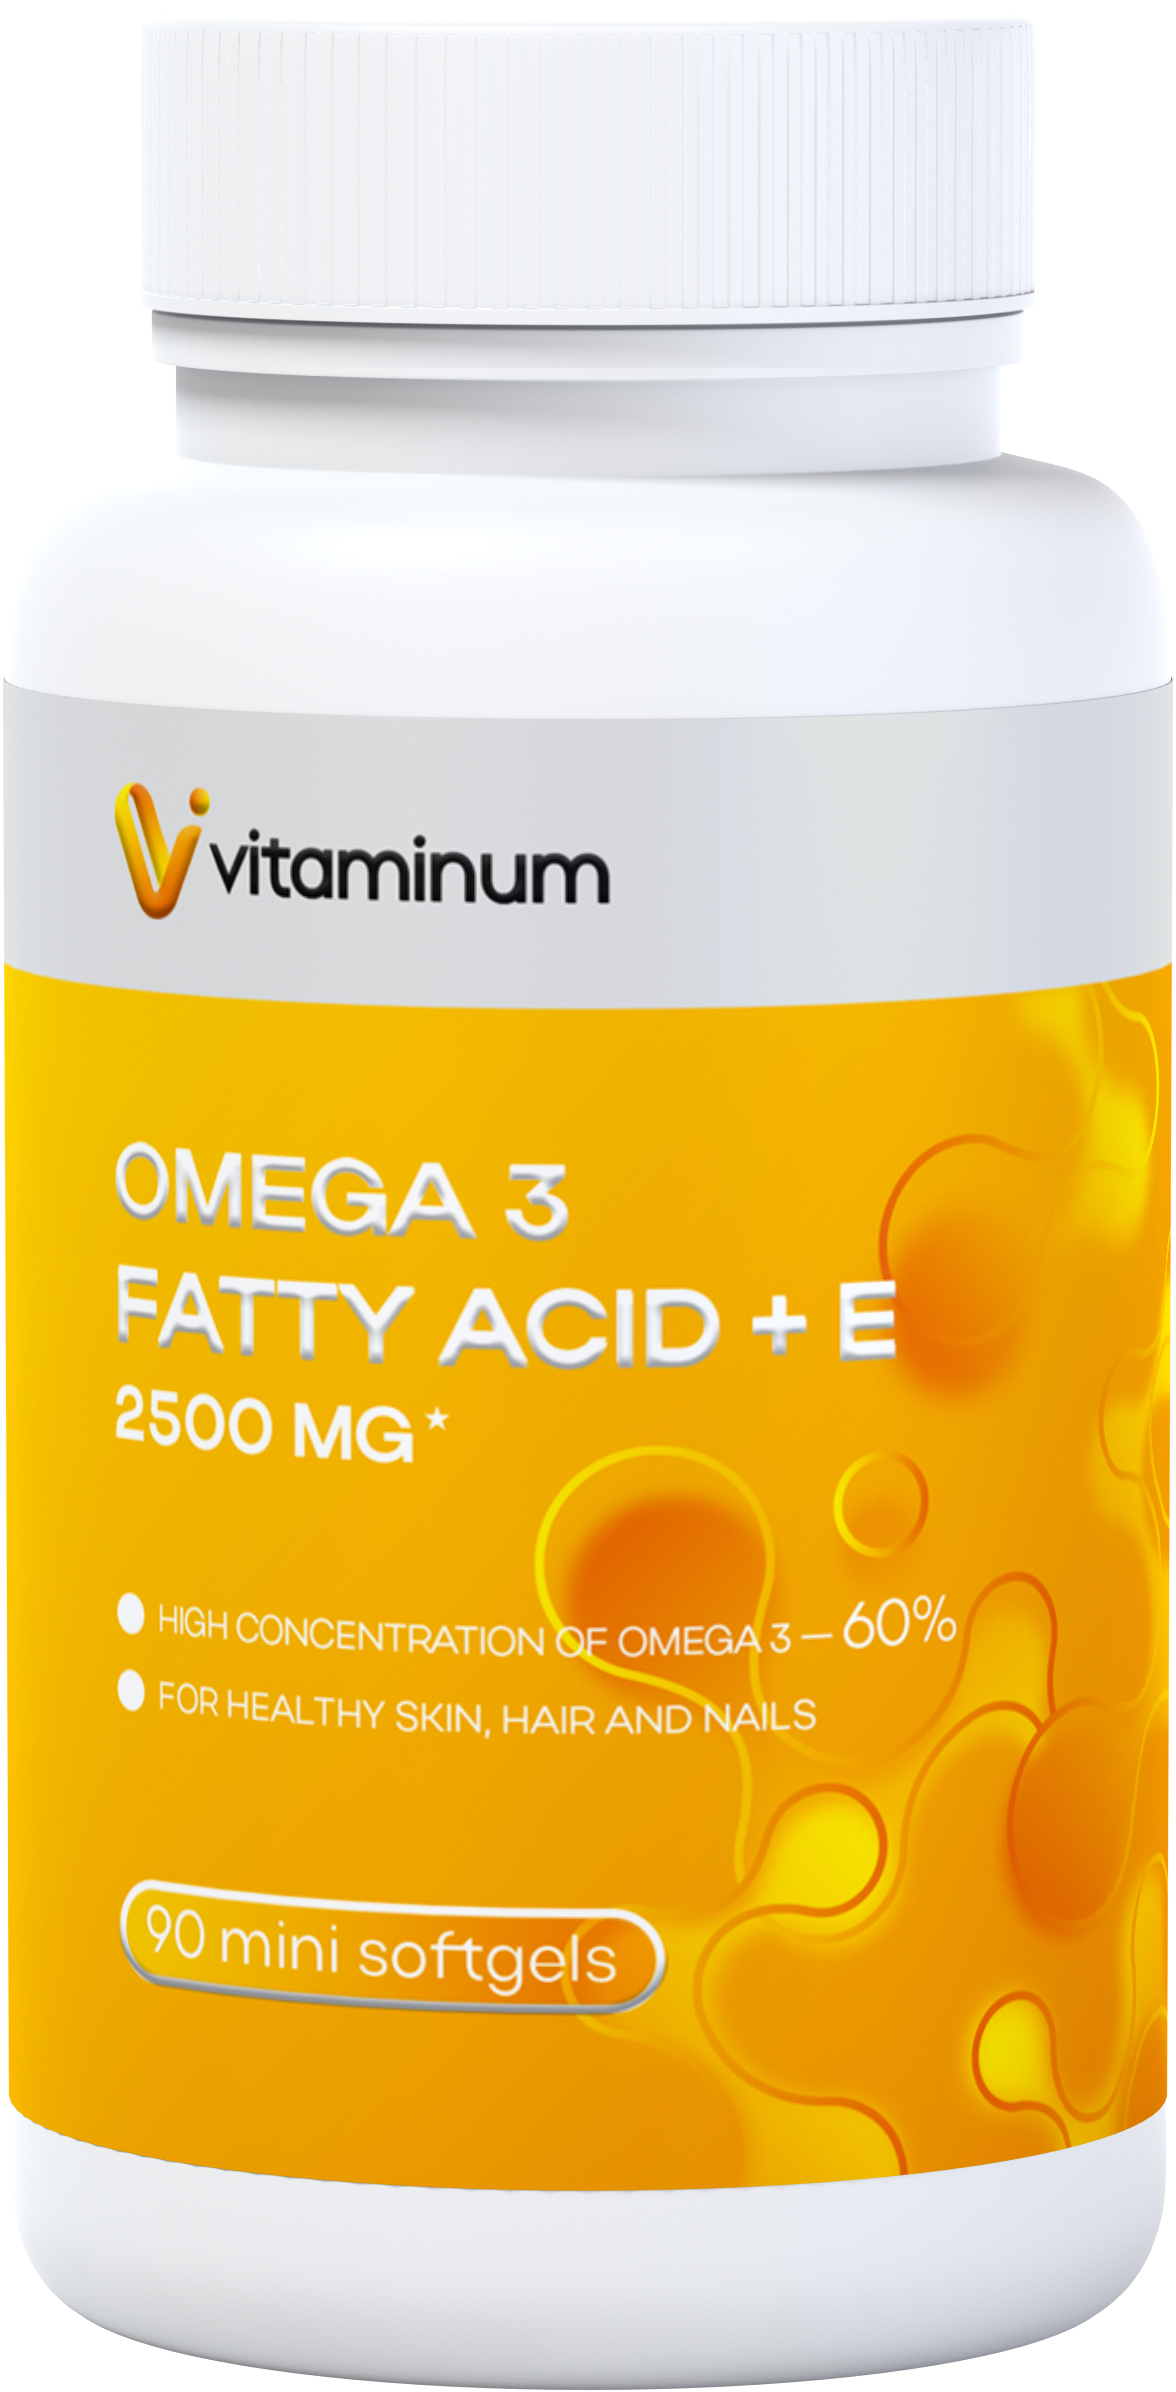  Vitaminum ОМЕГА 3 60% + витамин Е (2500 MG*) 90 капсул 700 мг   в Орске